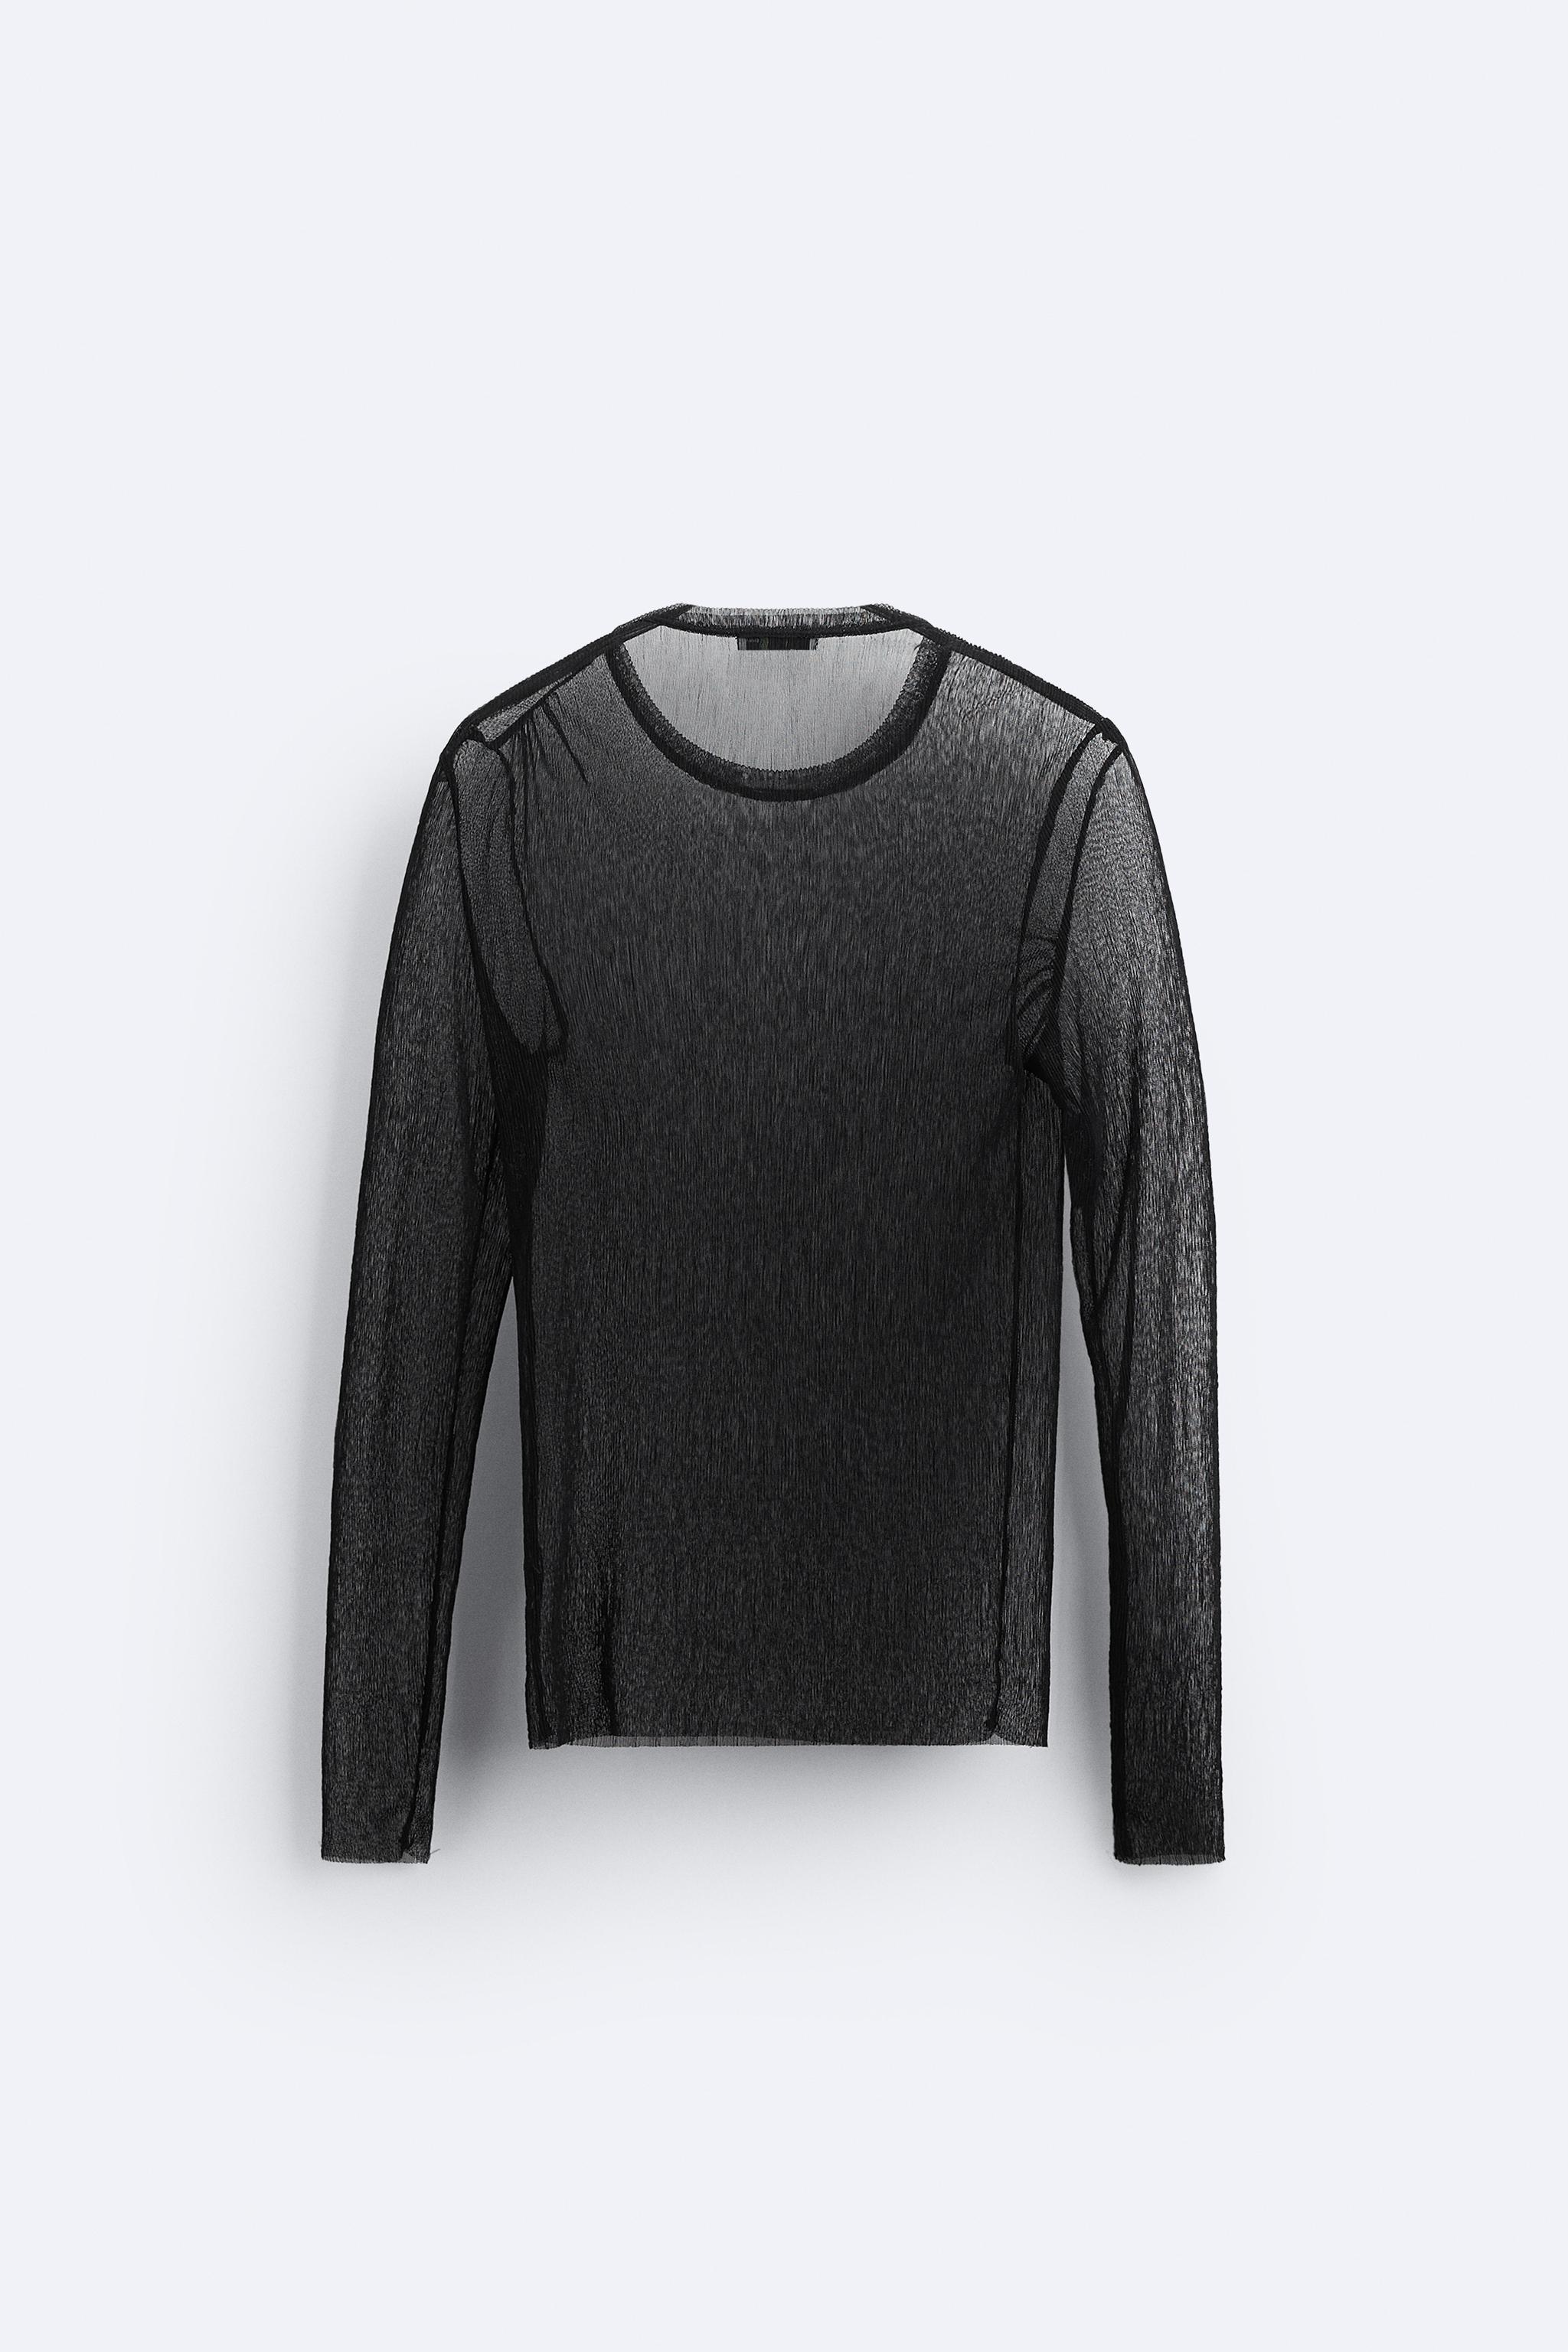 Semi-sheer knit T-shirt